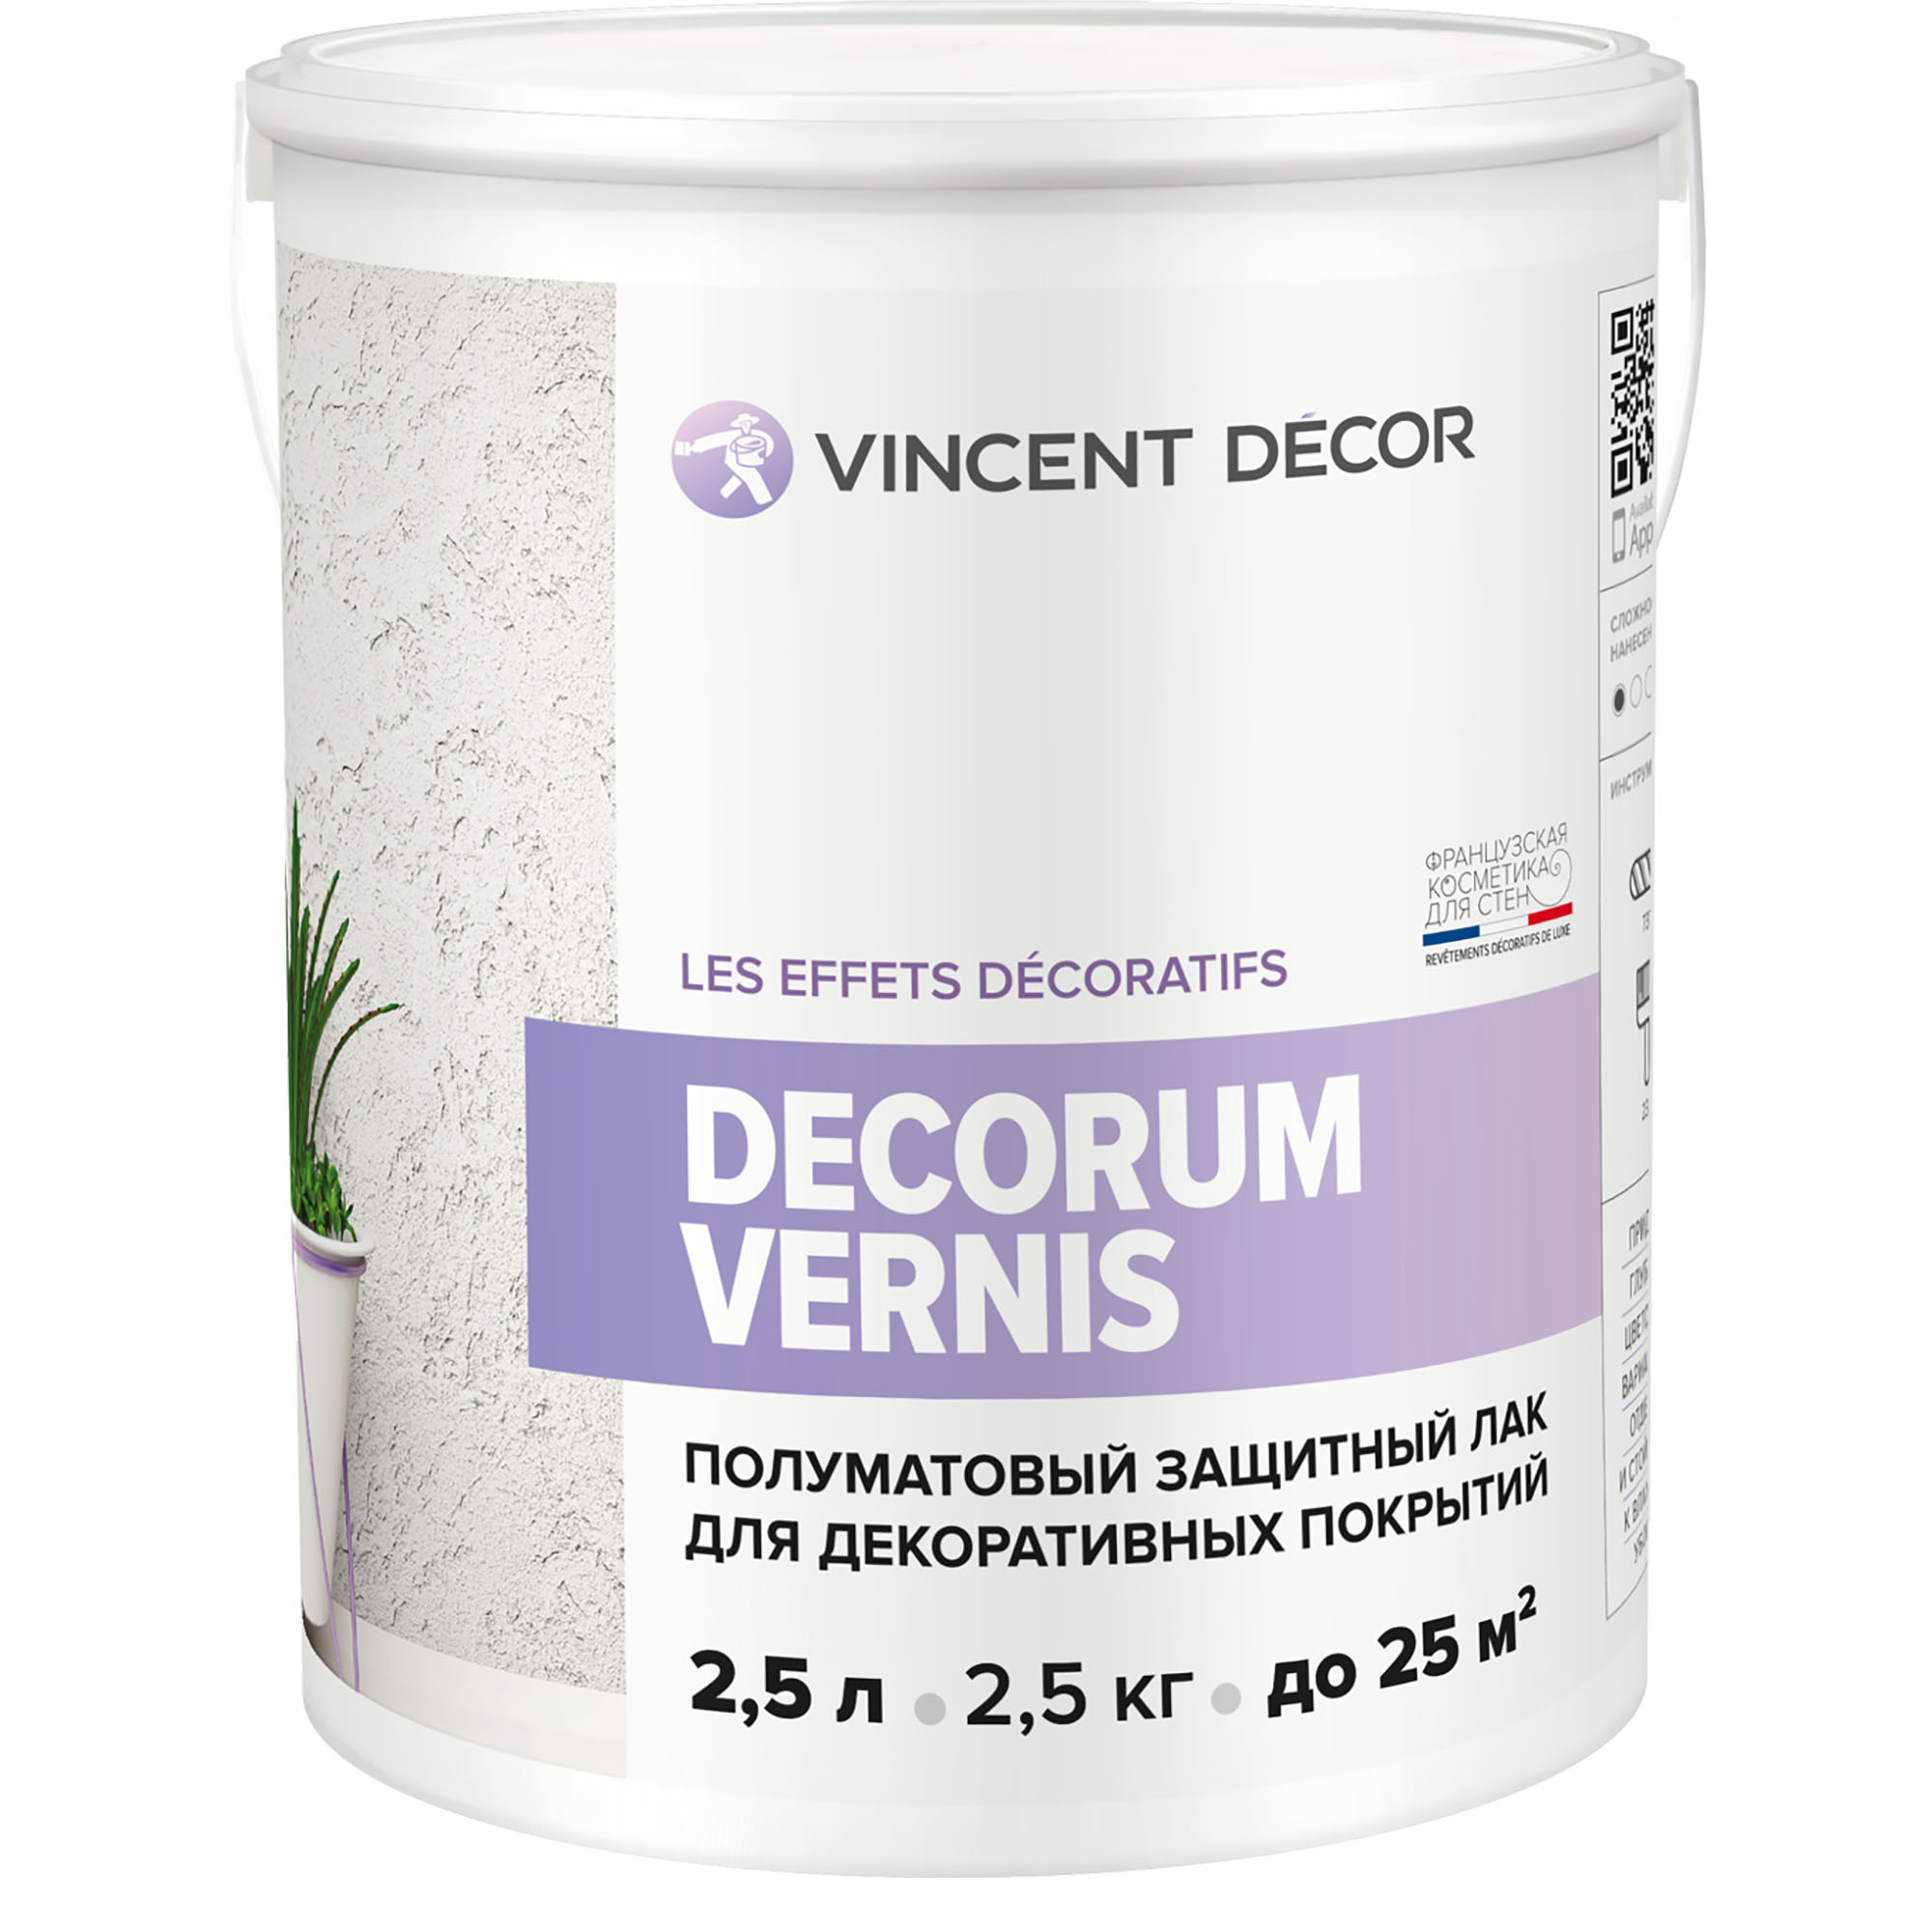 фото Лак защитный для декоративных покрытий vincent decor decorum vernis полуматовый 2,5 л